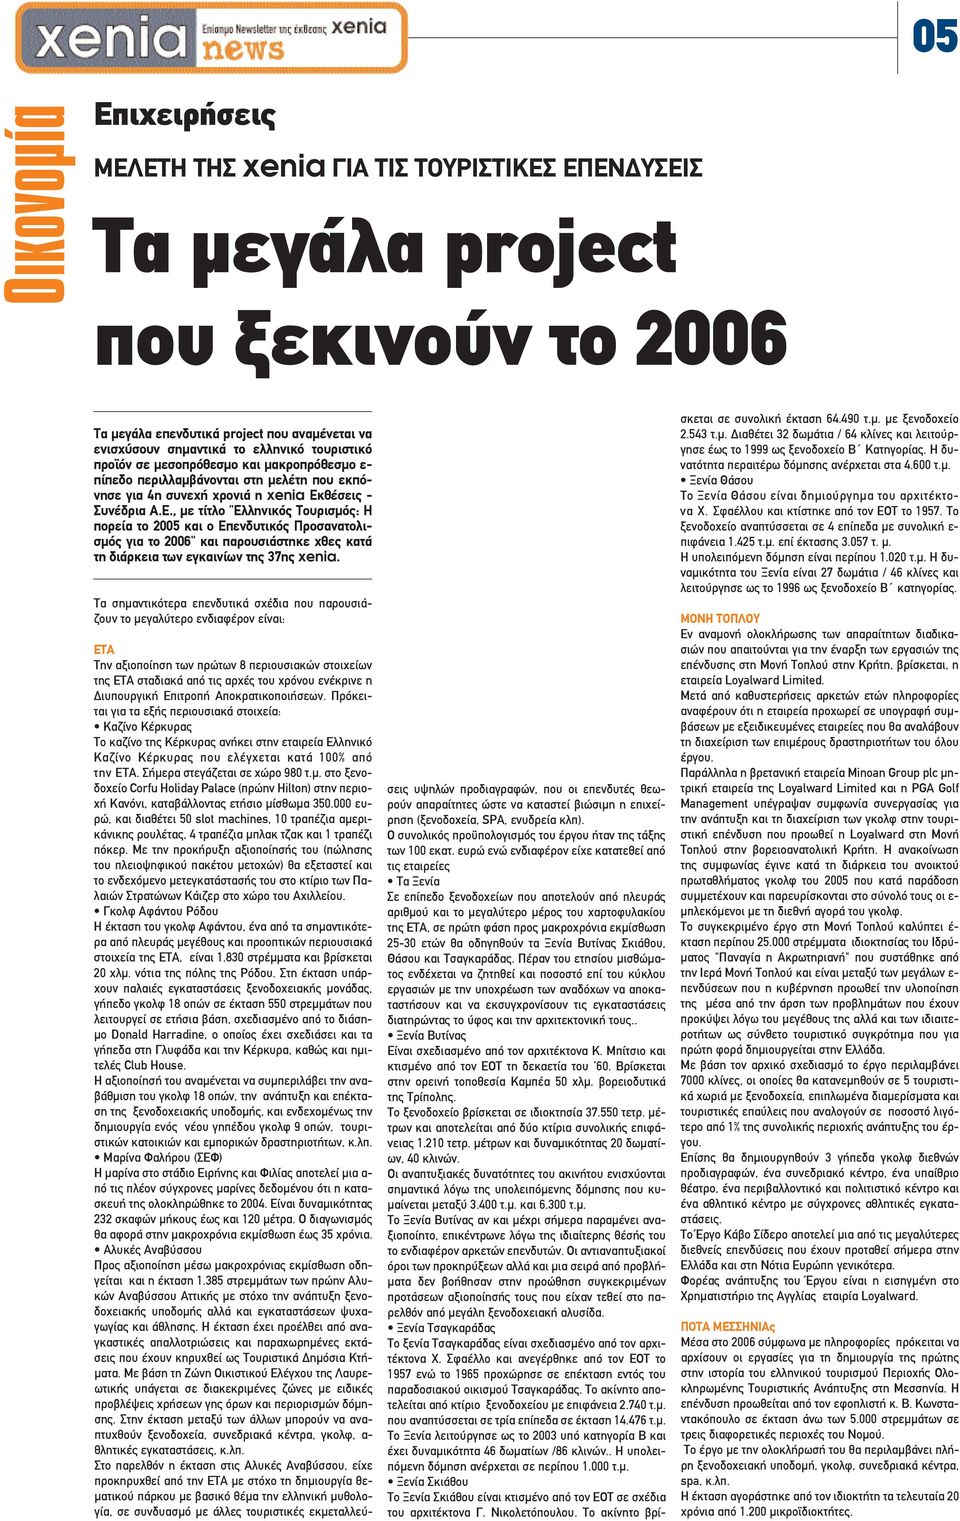 θέσεις - Συνέδρια Α.Ε., µε τίτλο "Ελληνικός Τουρισµός: Η πορεία το 2005 και ο Επενδυτικός Προσανατολισµός για το 2006" και παρουσιάστηκε χθες κατά τη διάρκεια των εγκαινίων της 37ης xenia.